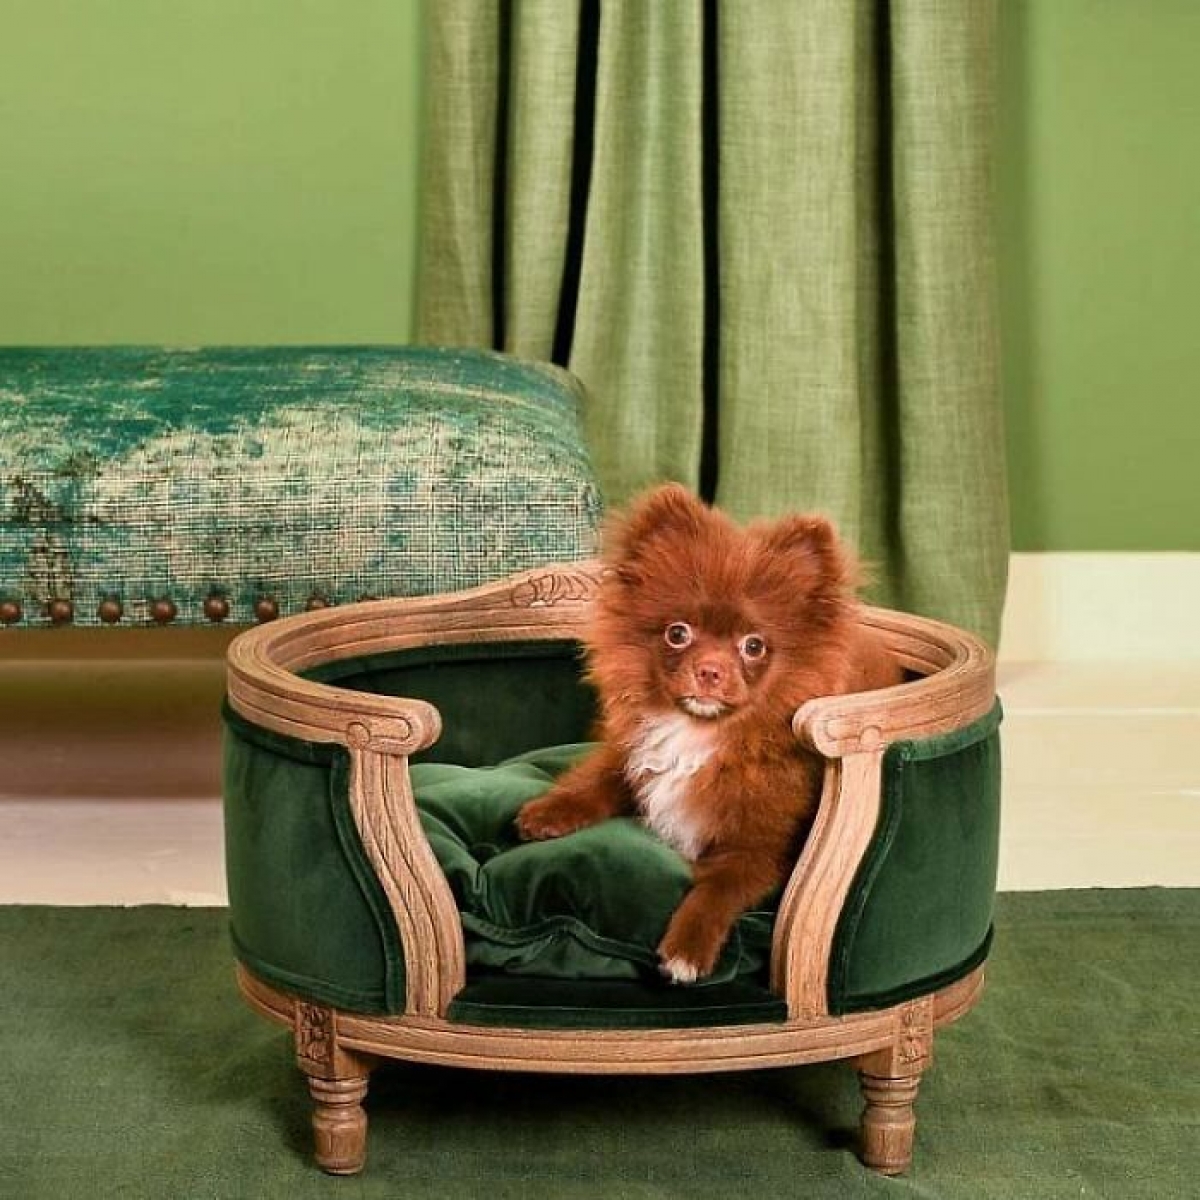 Chủ nhân thiết kế chiếc giường cho chó cưng đồng bộ màu xanh rêu với rèm và thảm nhà. Thiết kế này trị gái 1223 đô.